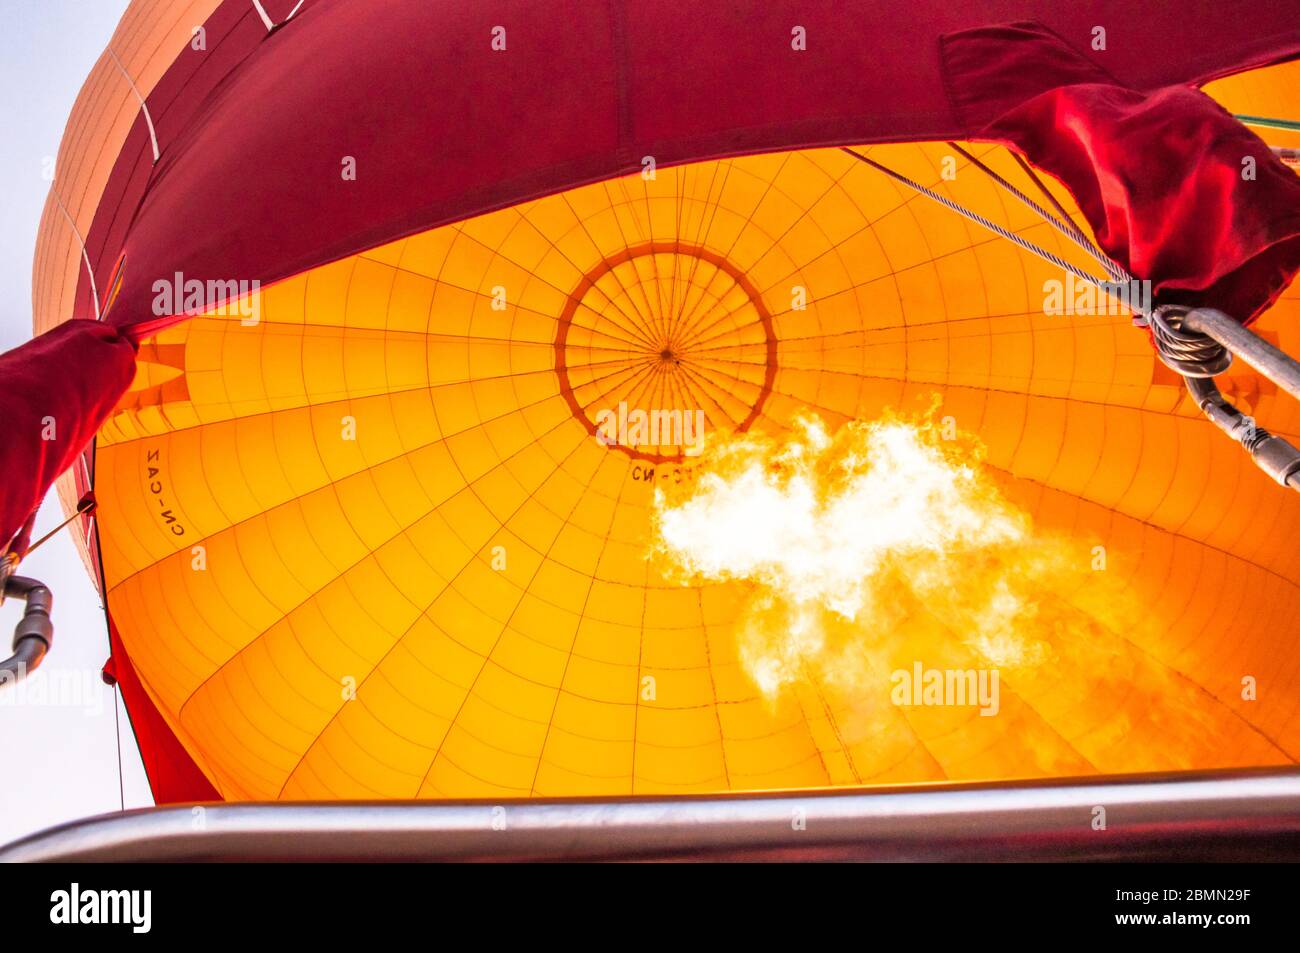 flamme nue à l'intérieur d'un ballon d'air chaud orange et rouge au-dessus du maroc. Combustion de gaz lumineux Banque D'Images